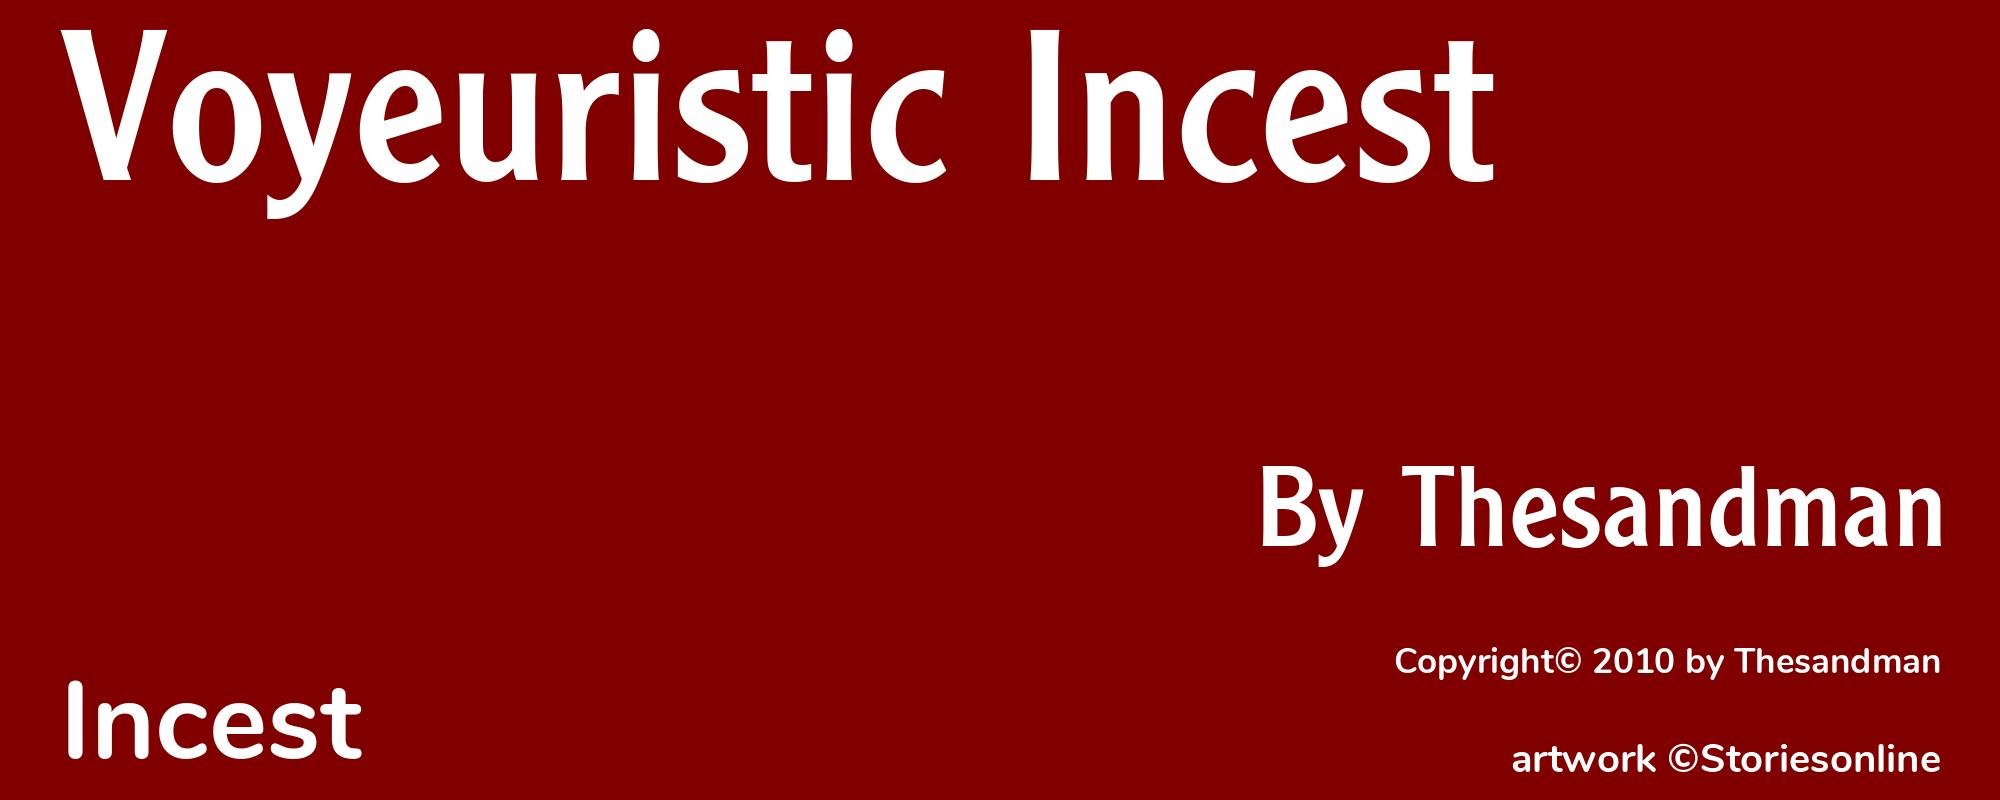 Voyeuristic Incest - Cover